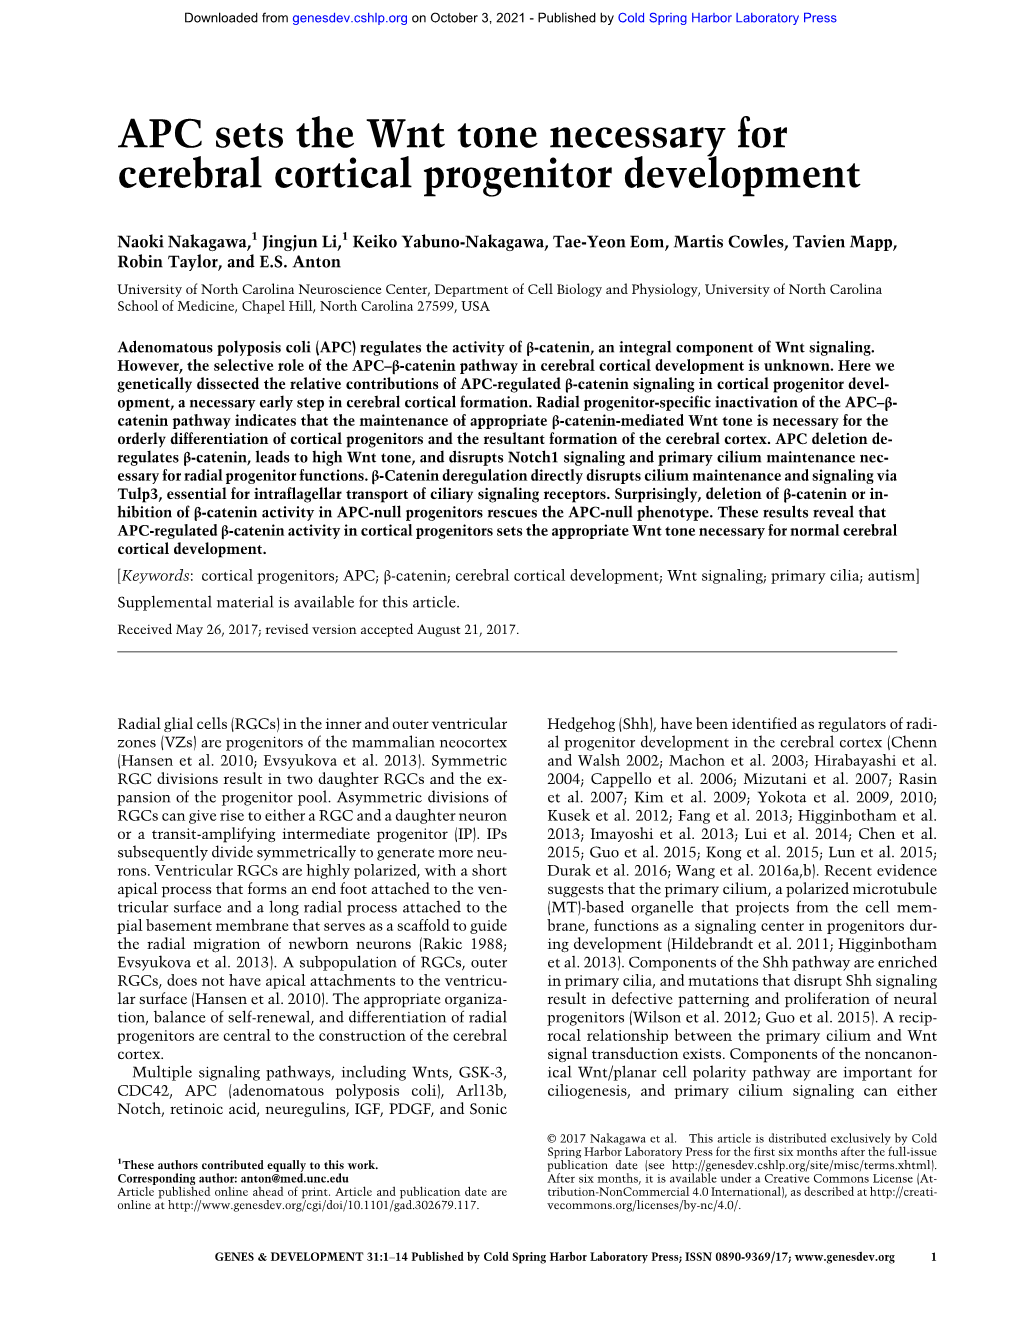 APC Sets the Wnt Tone Necessary for Cerebral Cortical Progenitor Development